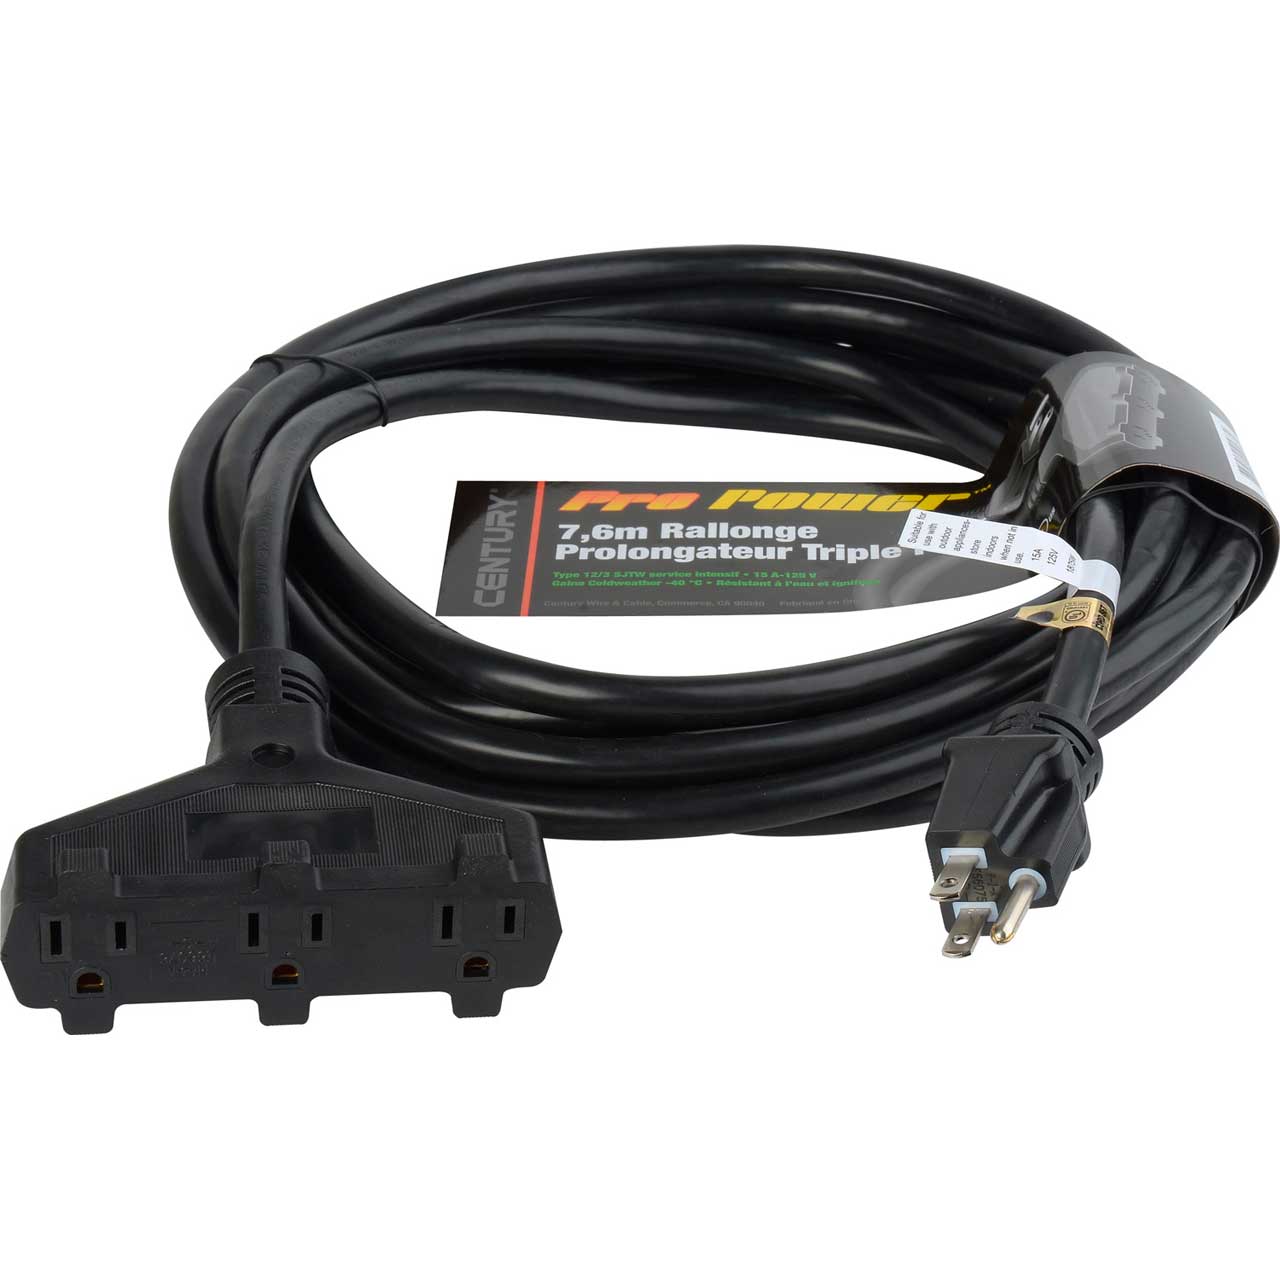 Milspec D15623050 ProPower Tri-Tap Cordset 12/3 AC Extension Cord Black 50 Foot